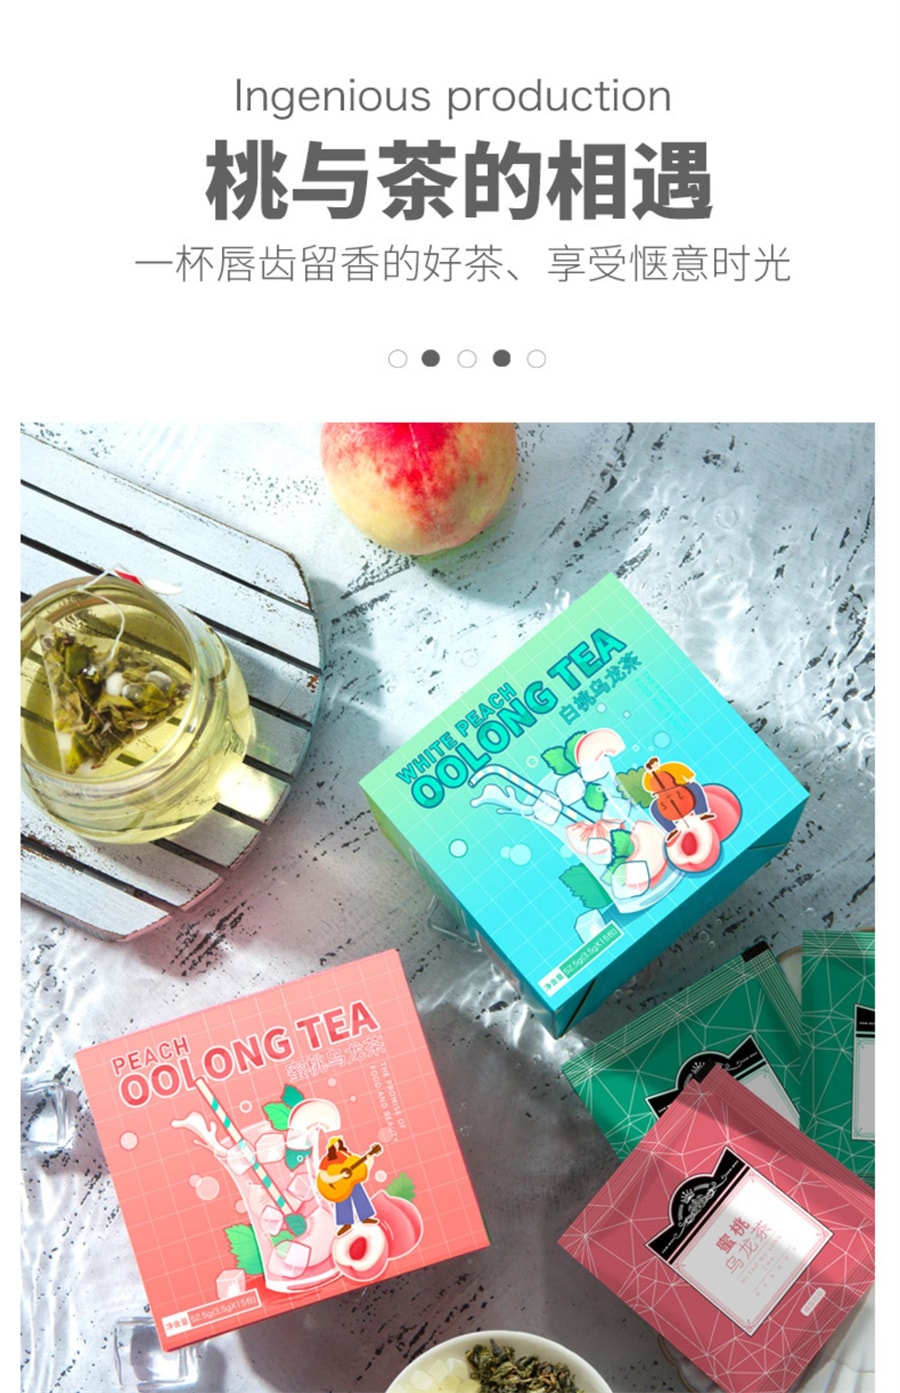 【中国直邮】趣大夫 白桃乌龙茶 茶多酚助你爱上喝茶 1盒/15包